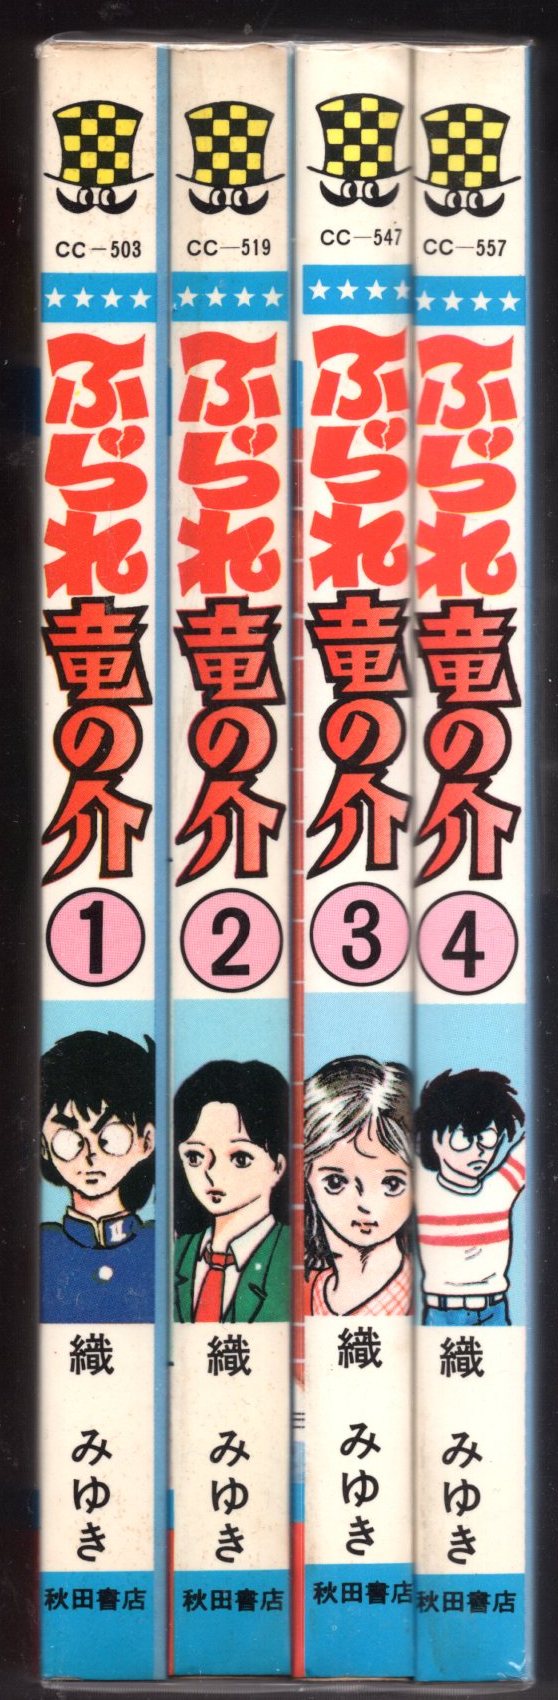 秋田書店 少年チャンピオンコミックス 織みゆき ふられ竜の介 全4巻 再版セット